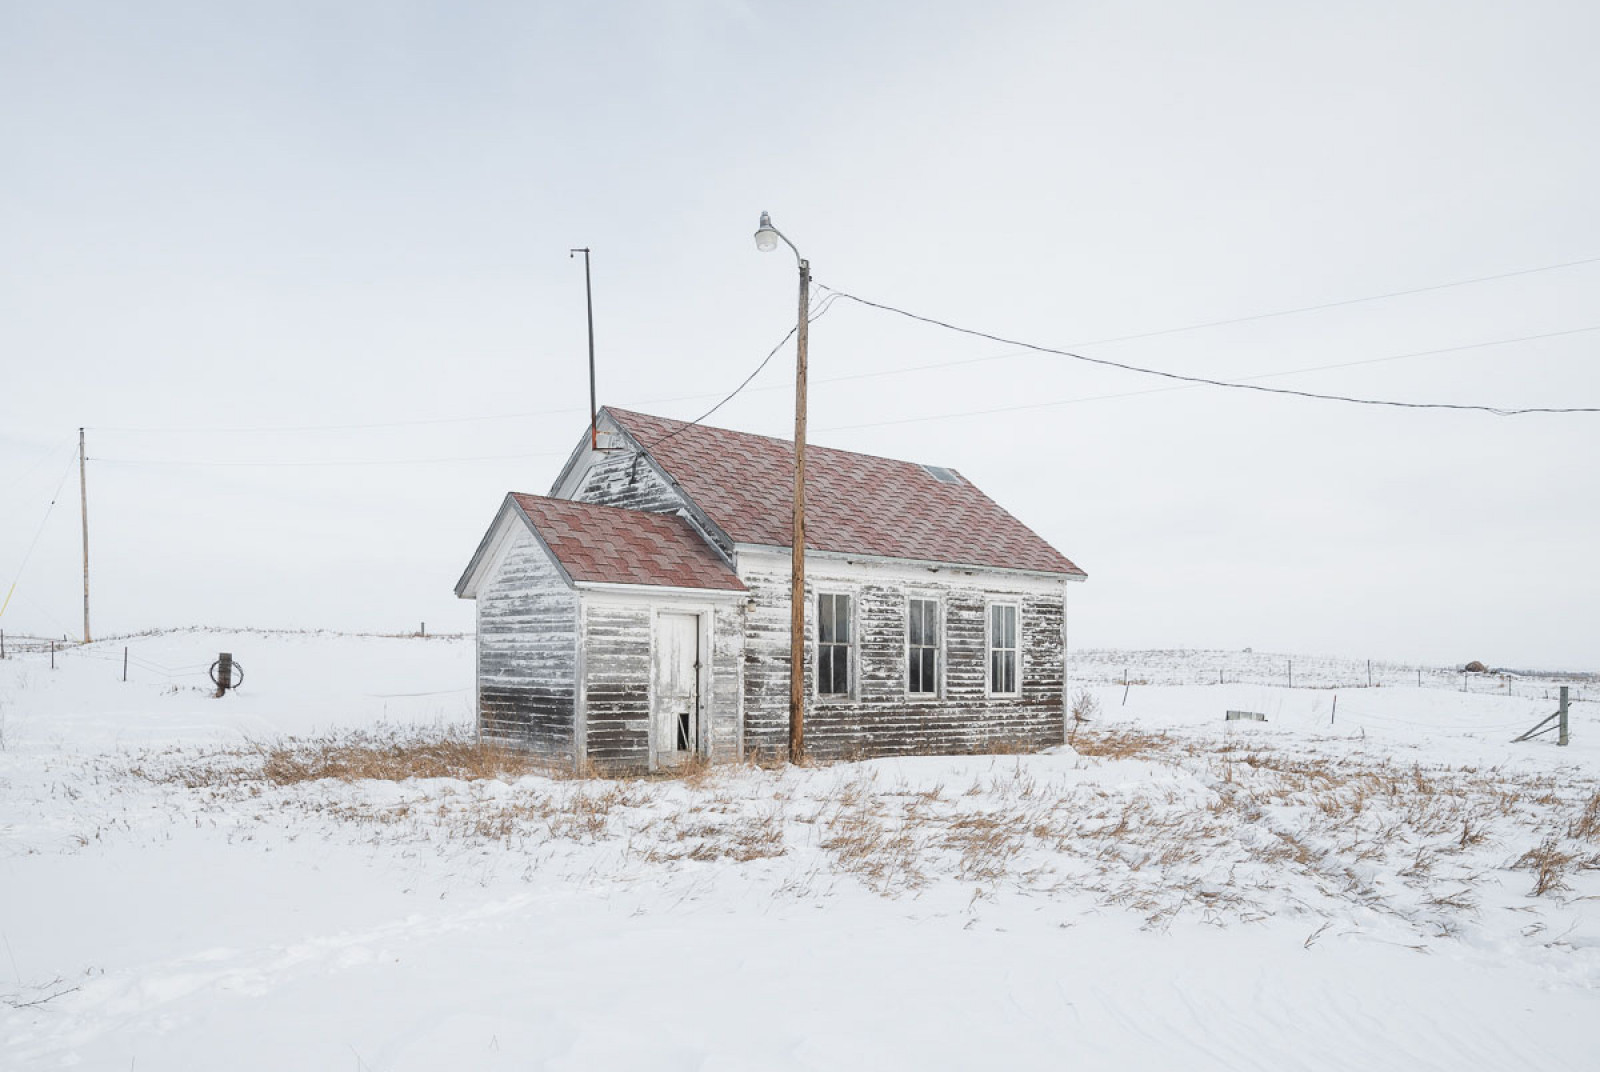 Категорія "Архітектура". 1 місце: Sandra Herber, “North Dakota Winter”